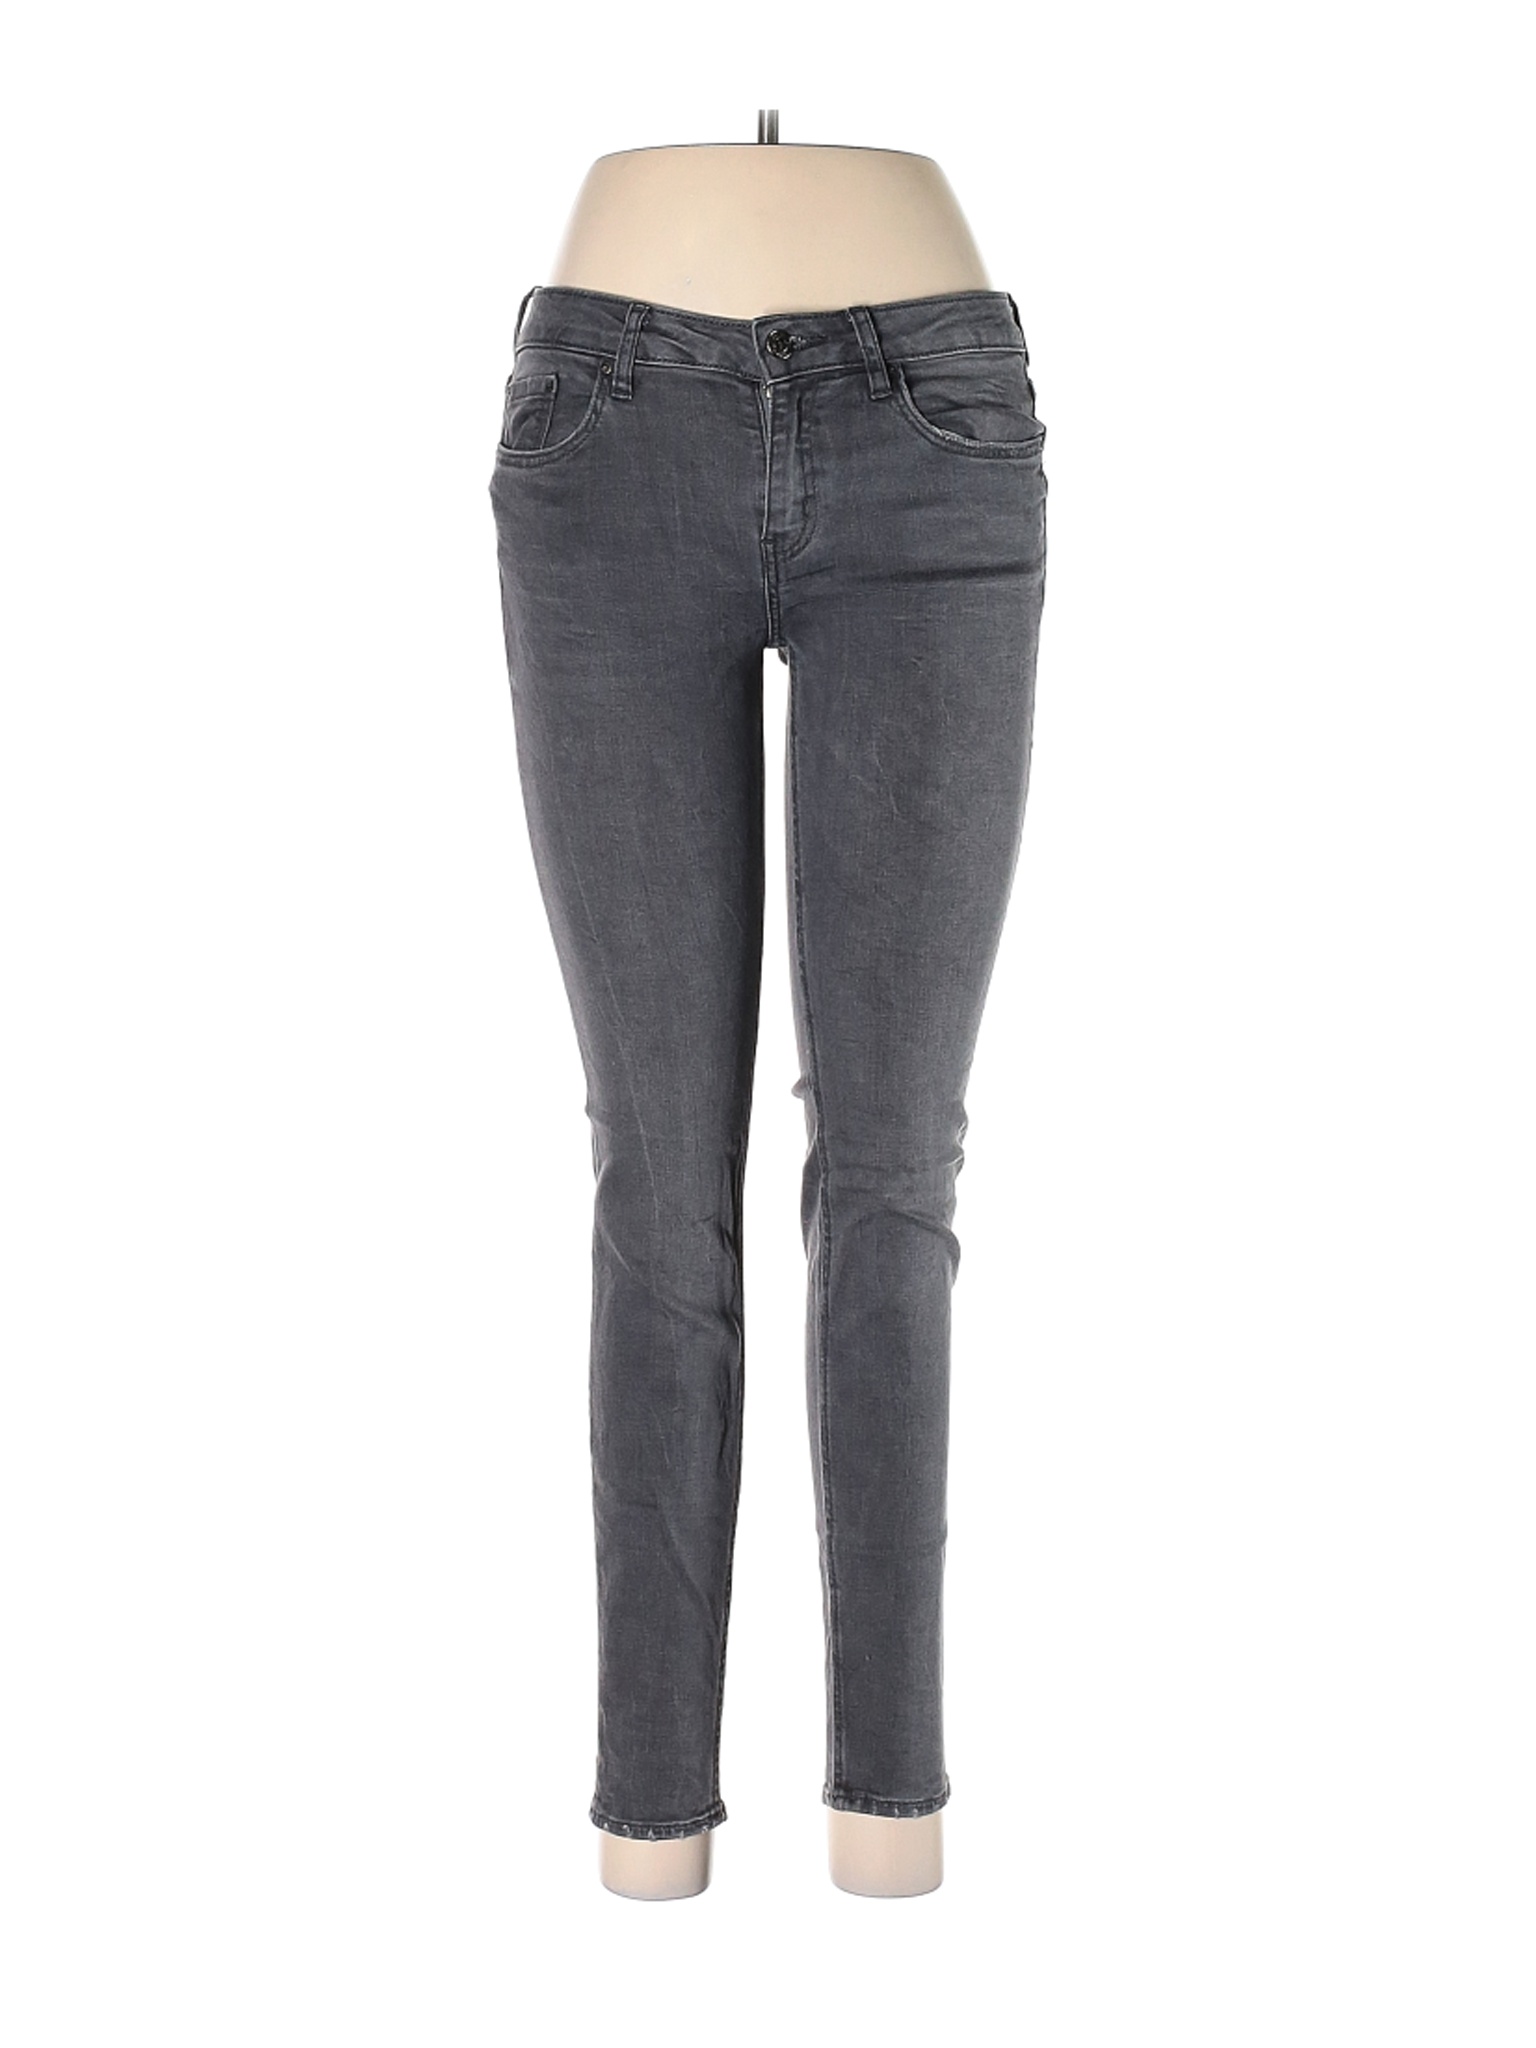 Zara Women Gray Jeans 4 | eBay